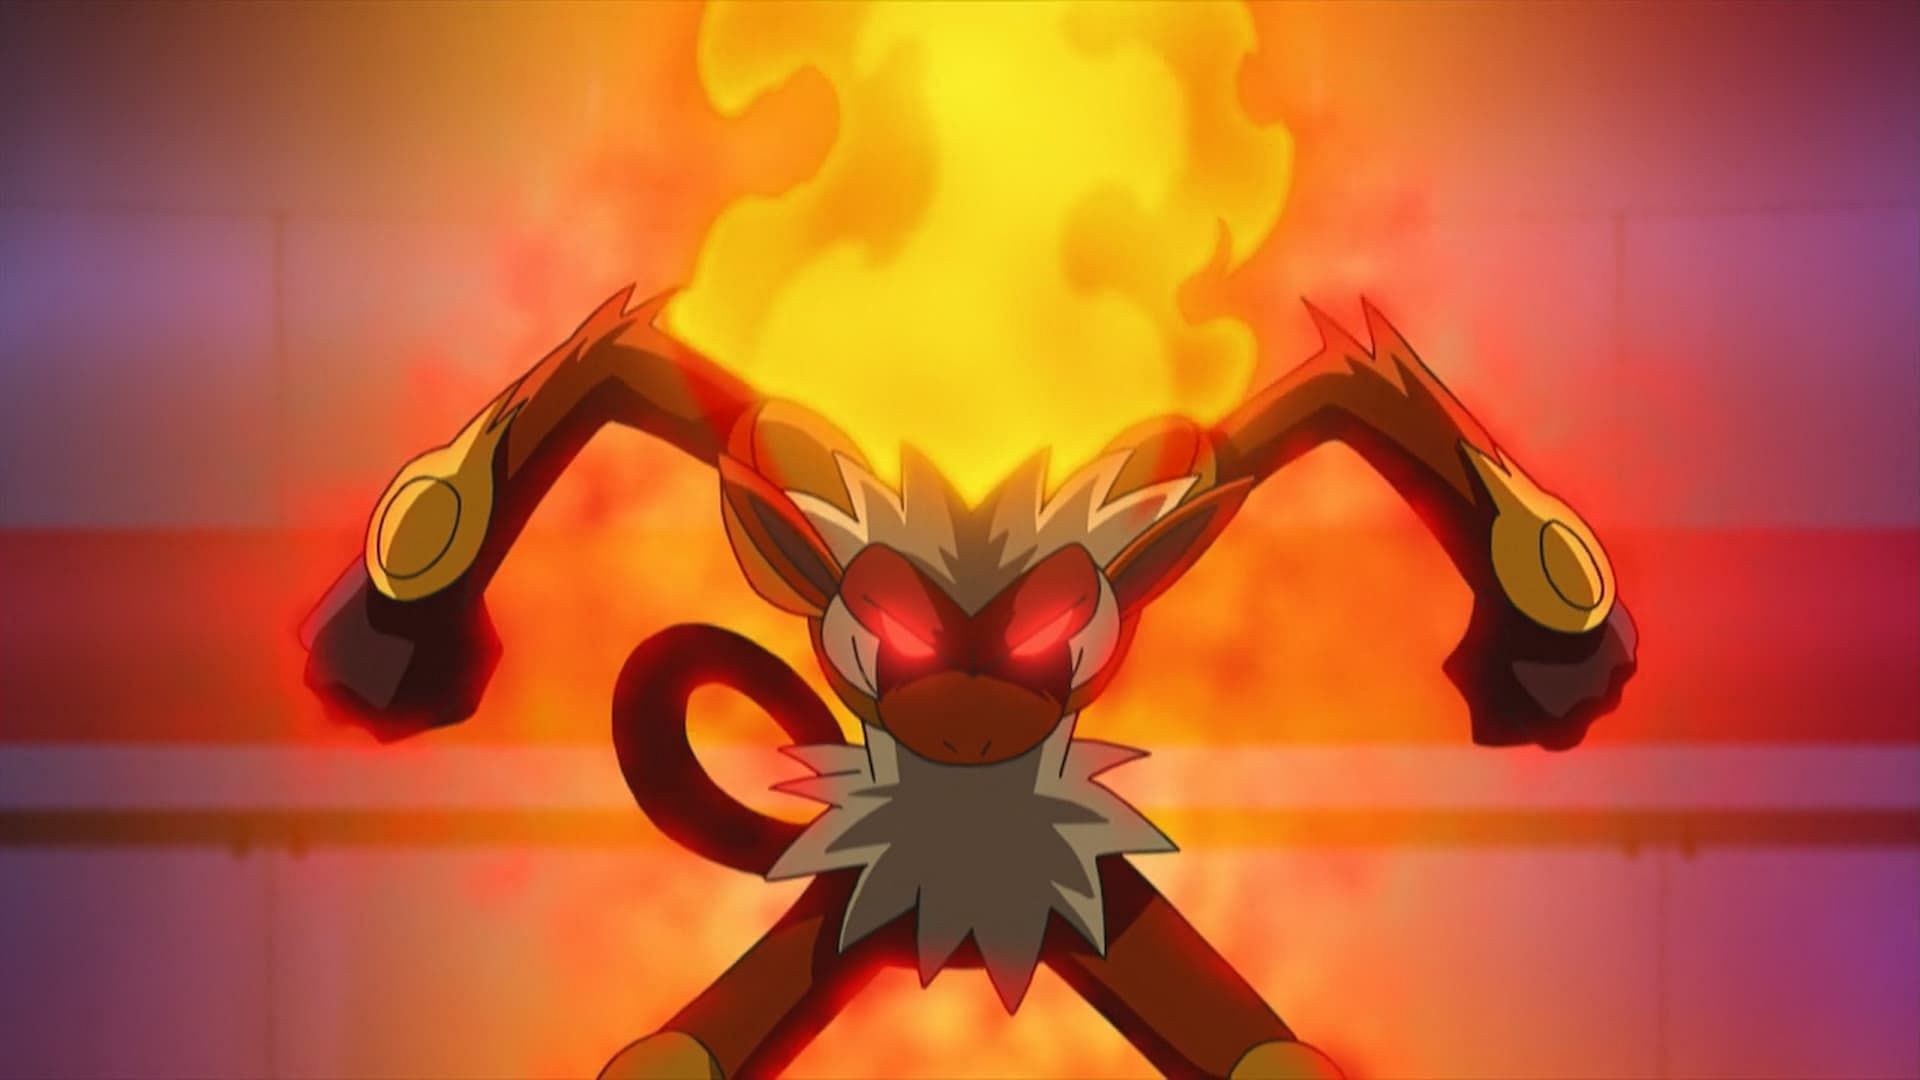 L'Infernape di Ash attiva Blaze nell'anime (immagine tramite The Pokemon Company)